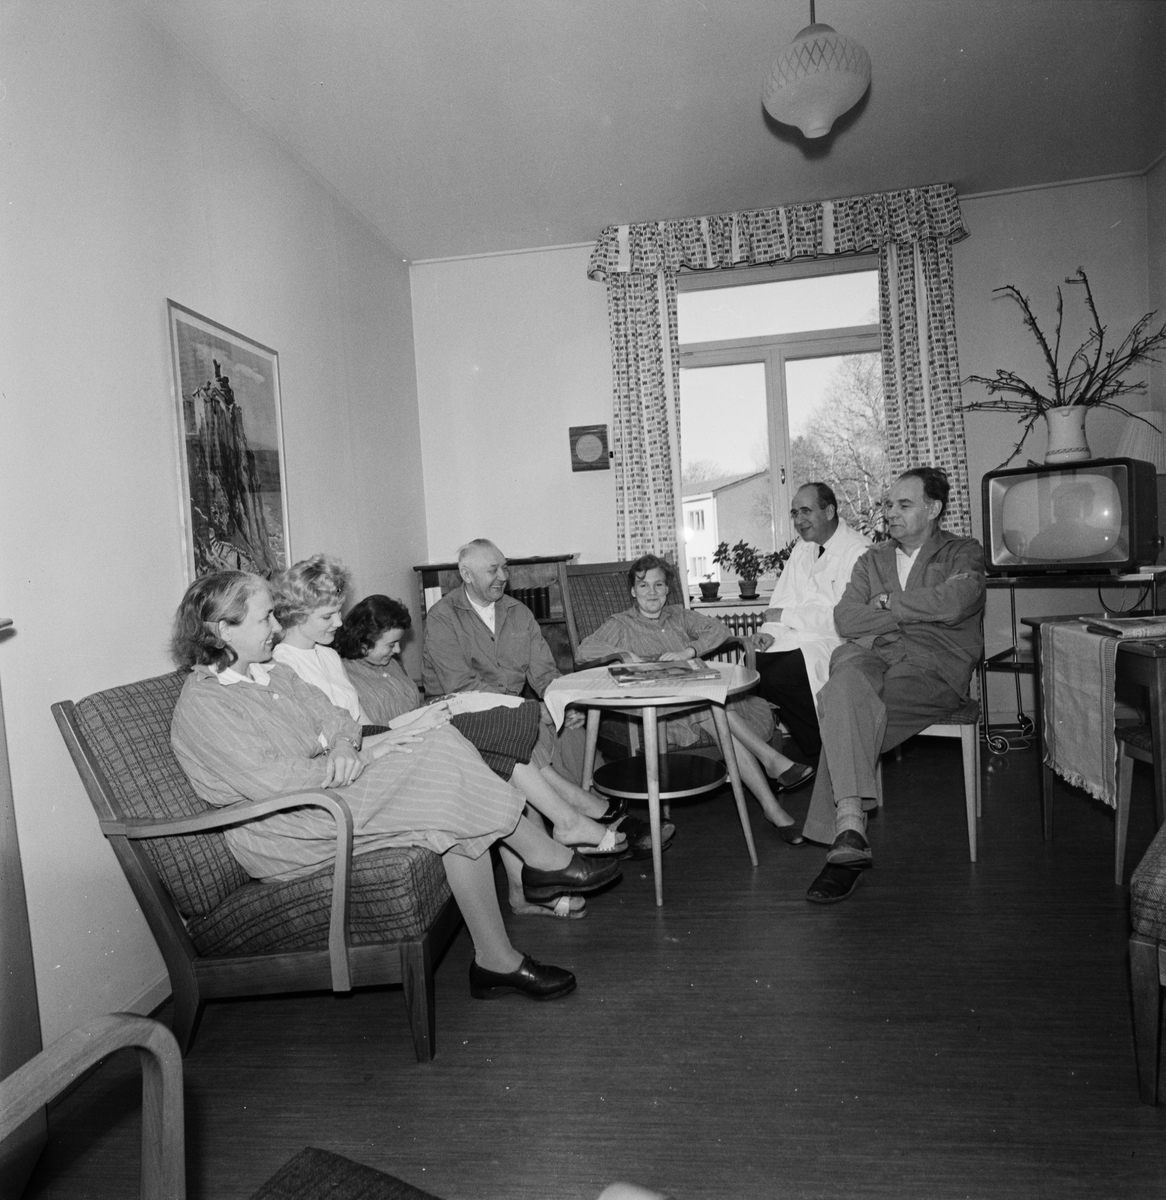 Akademiska sjukhuset, neurologiska kliniken, dagrum med patienter och personal, Uppsala 1959